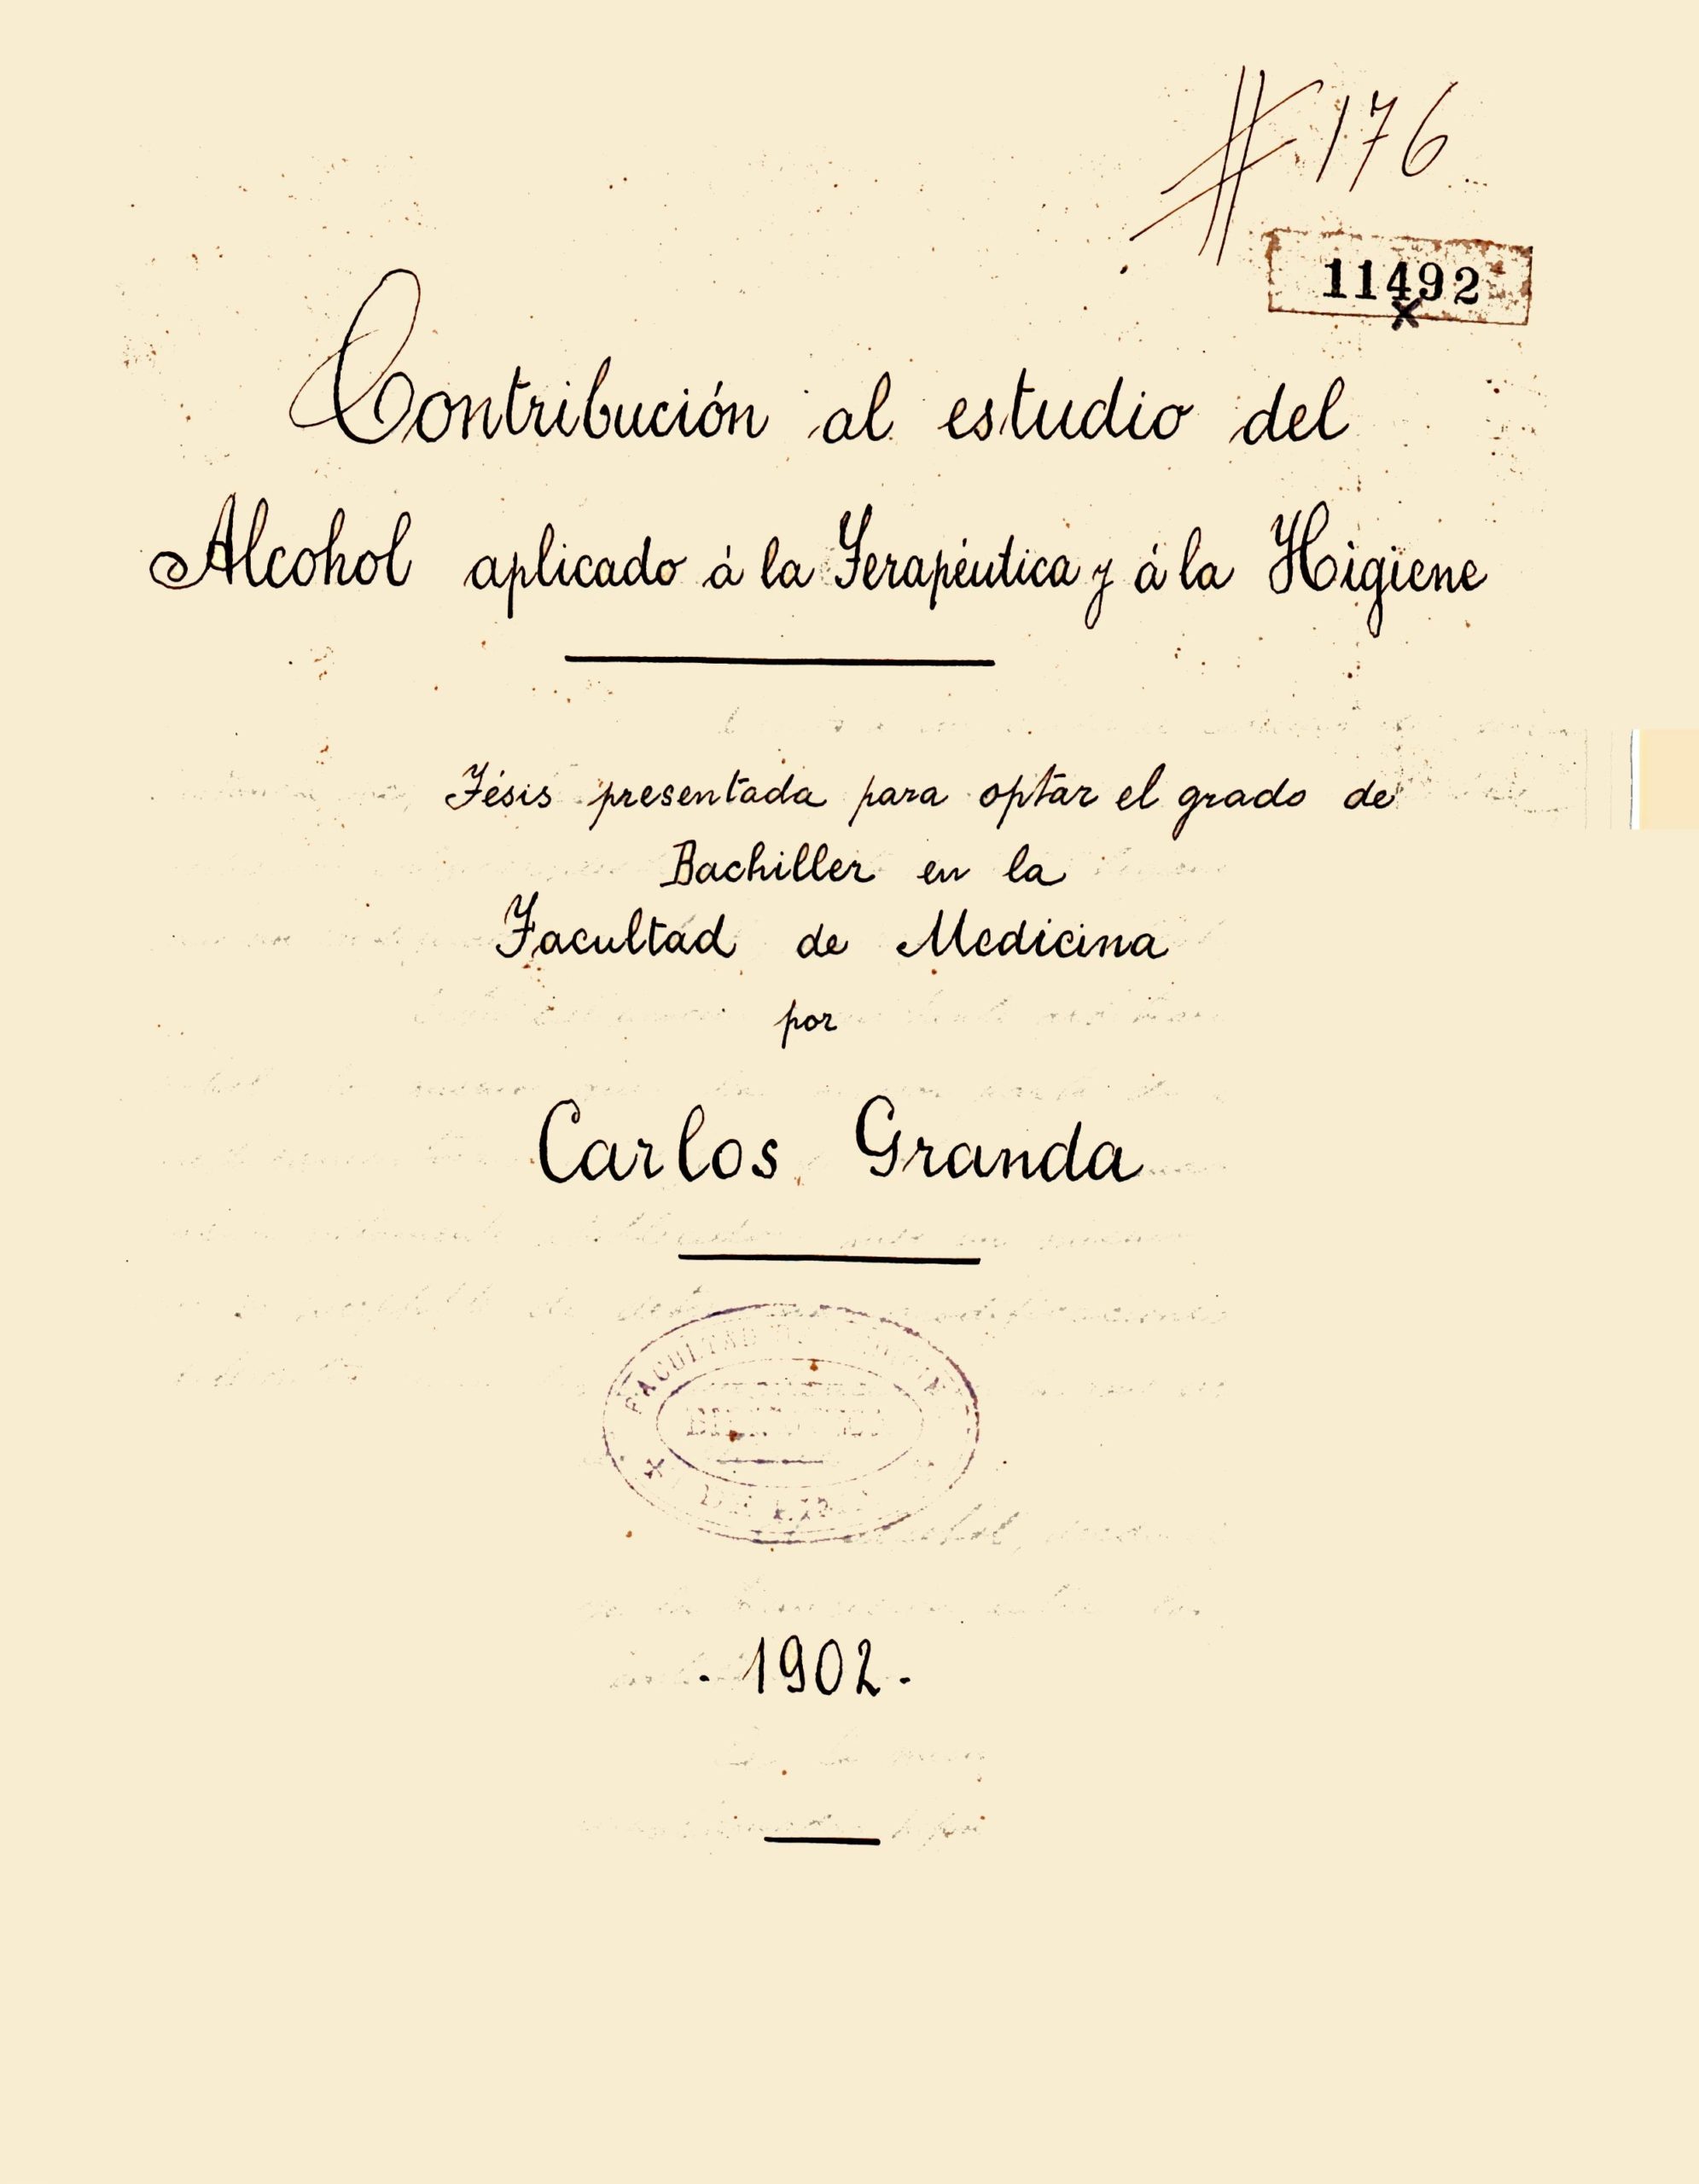 Contribucion al estudio del alcohol_Carlos Granda_1902